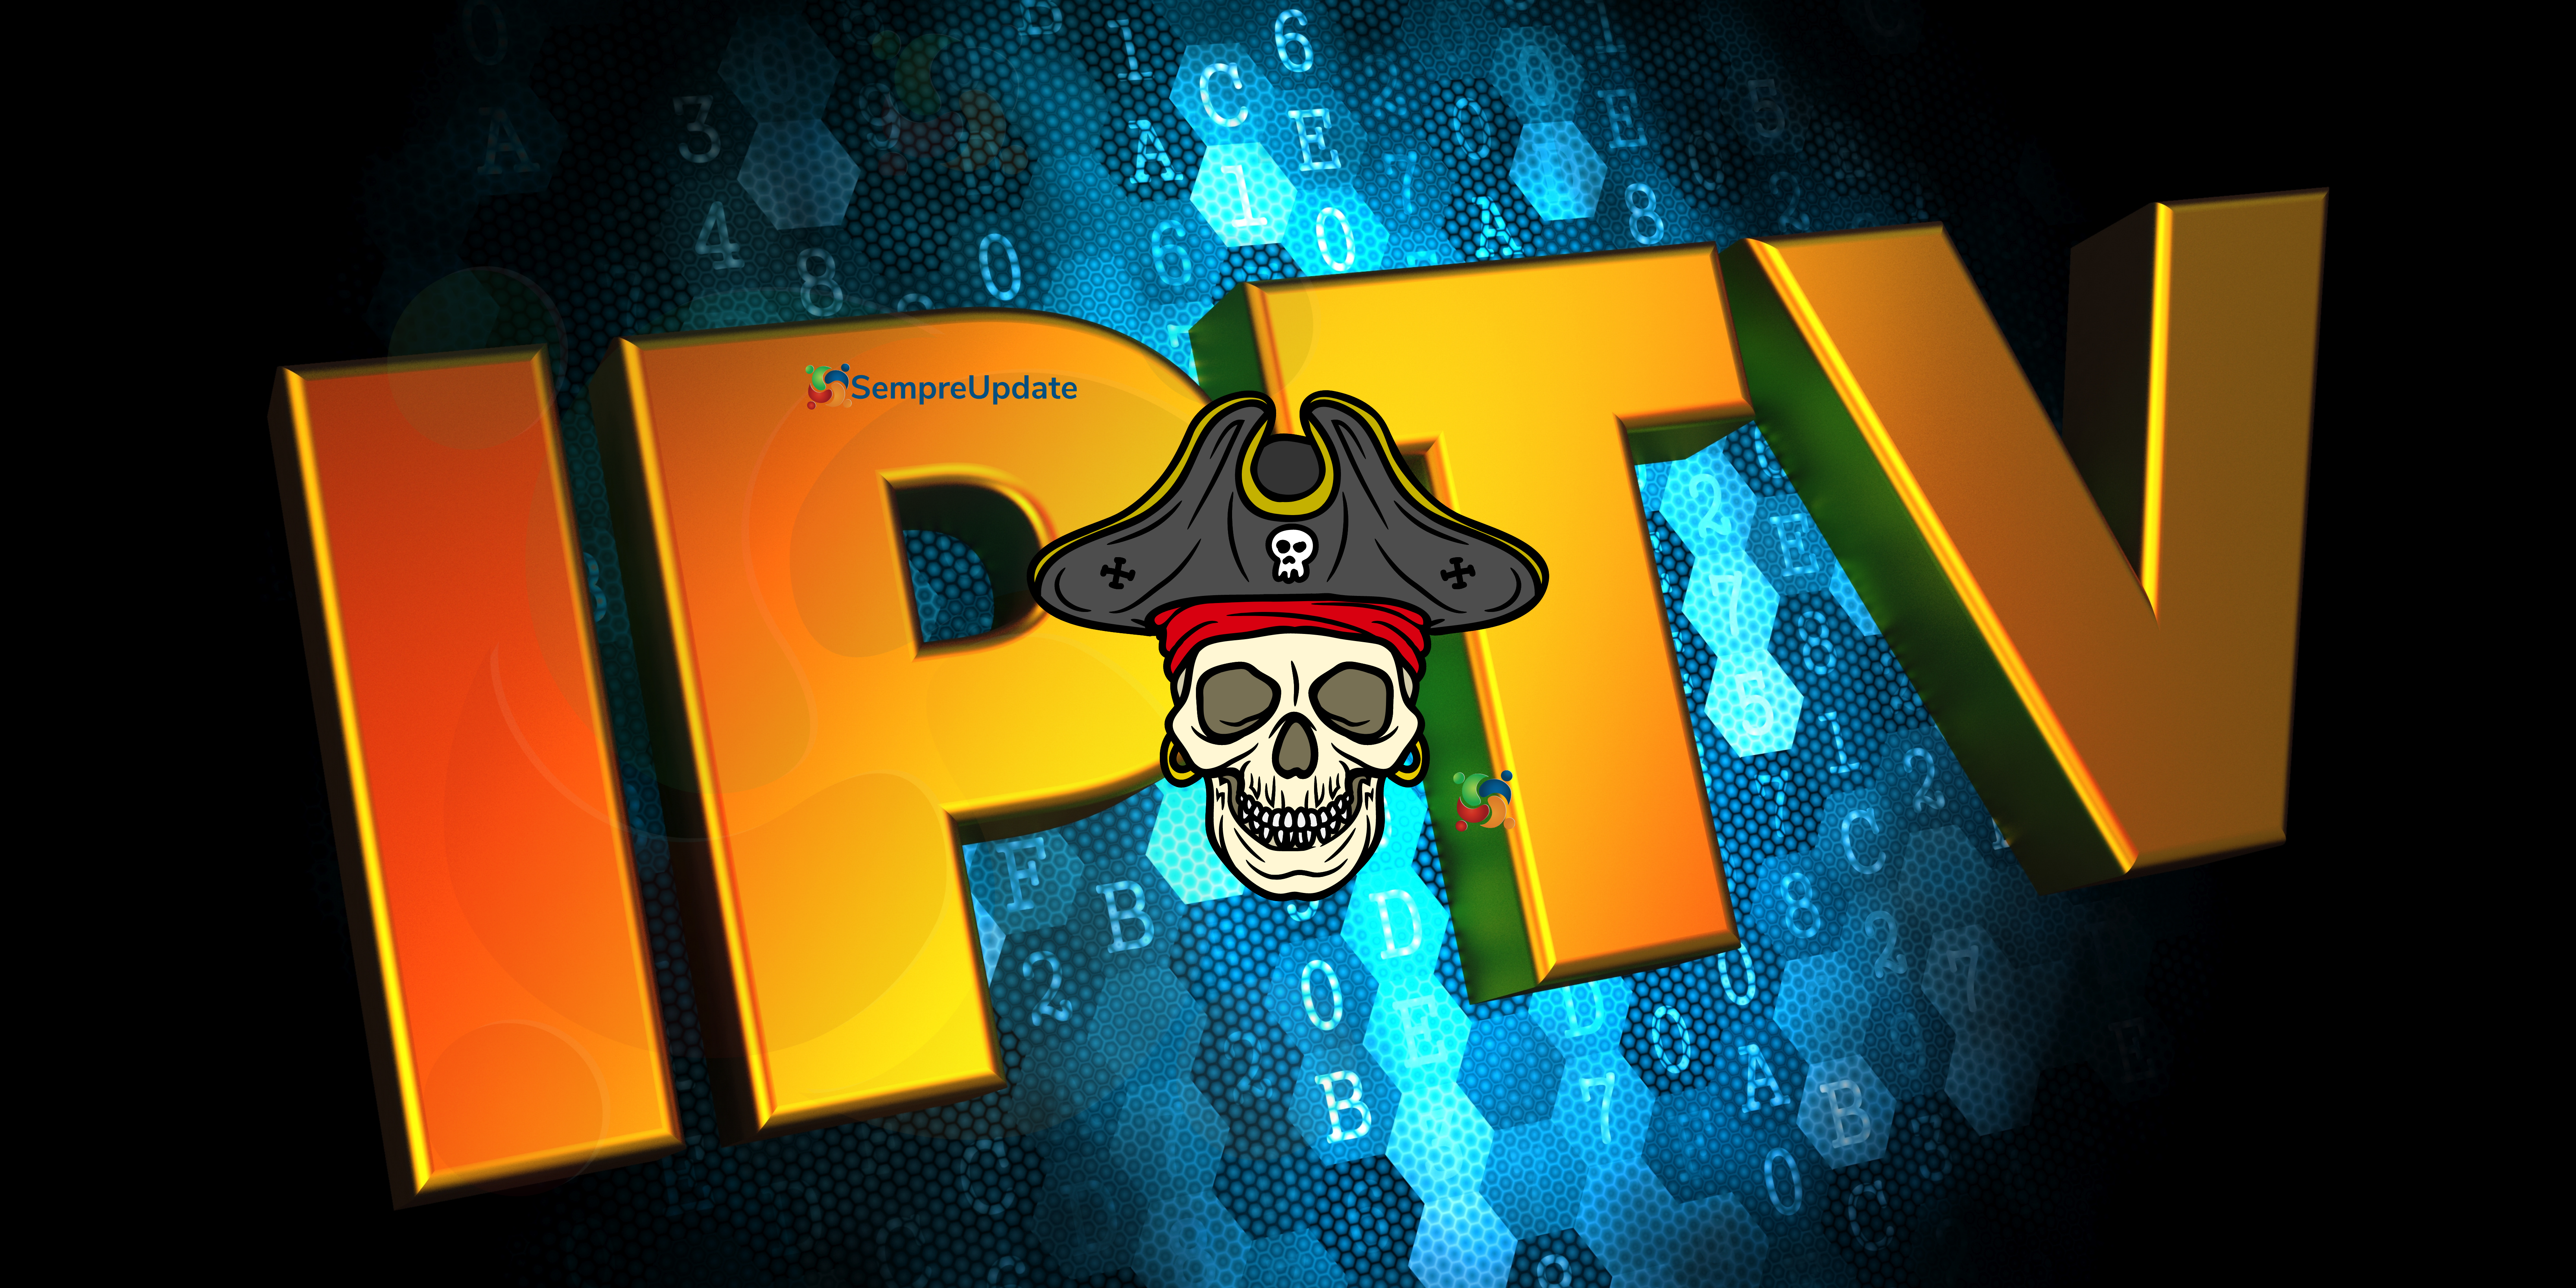 5-motivos-pelos-quais-usar-iptv-pirata-e-uma-ma-ideia